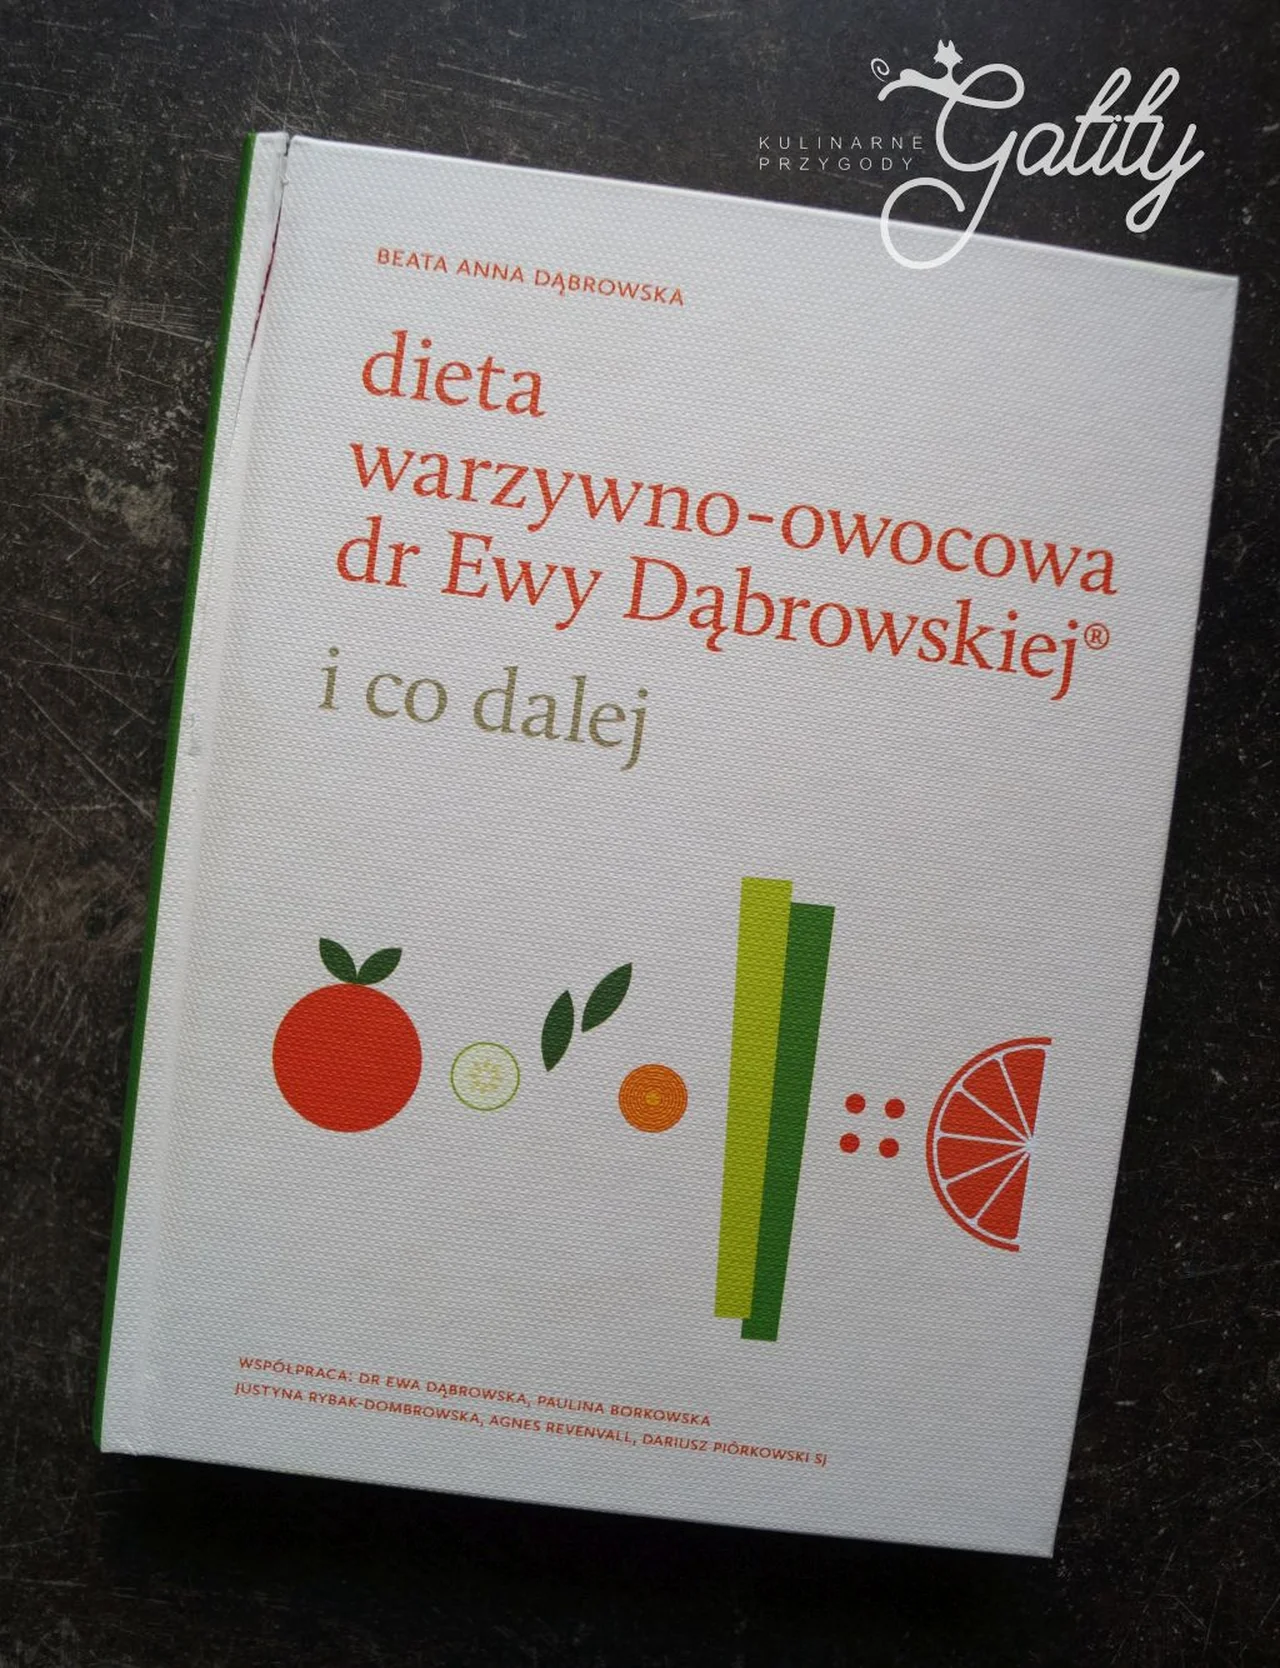 Dieta warzywno-owocowa dr Ewy Dąbrowskiej ®  i co dalej - parę słów o książce